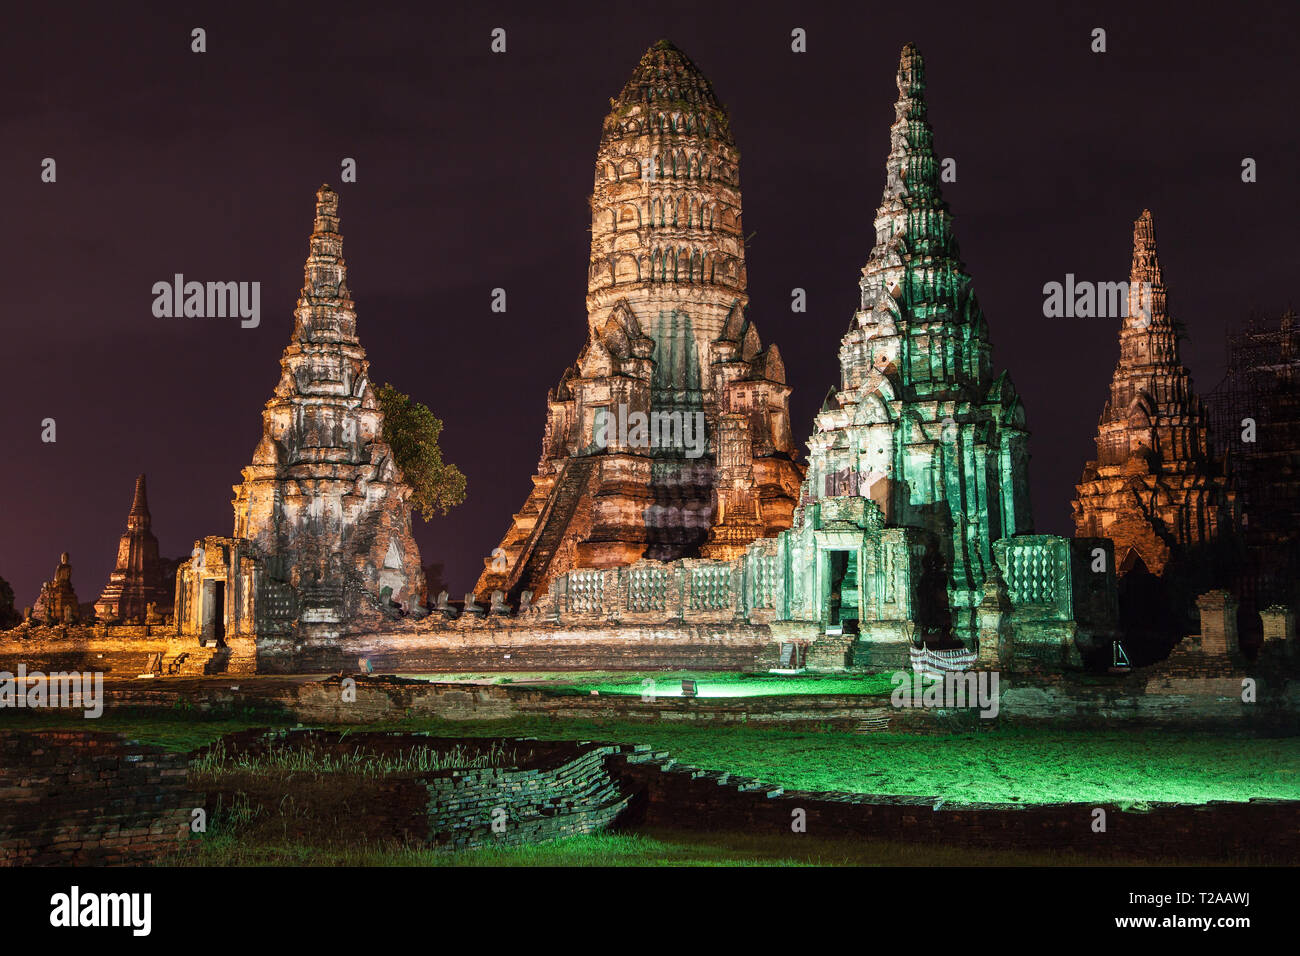 Ruins of Wat Chaiwatthanaram at night in Ayutthaya, Thailand. Stock Photo